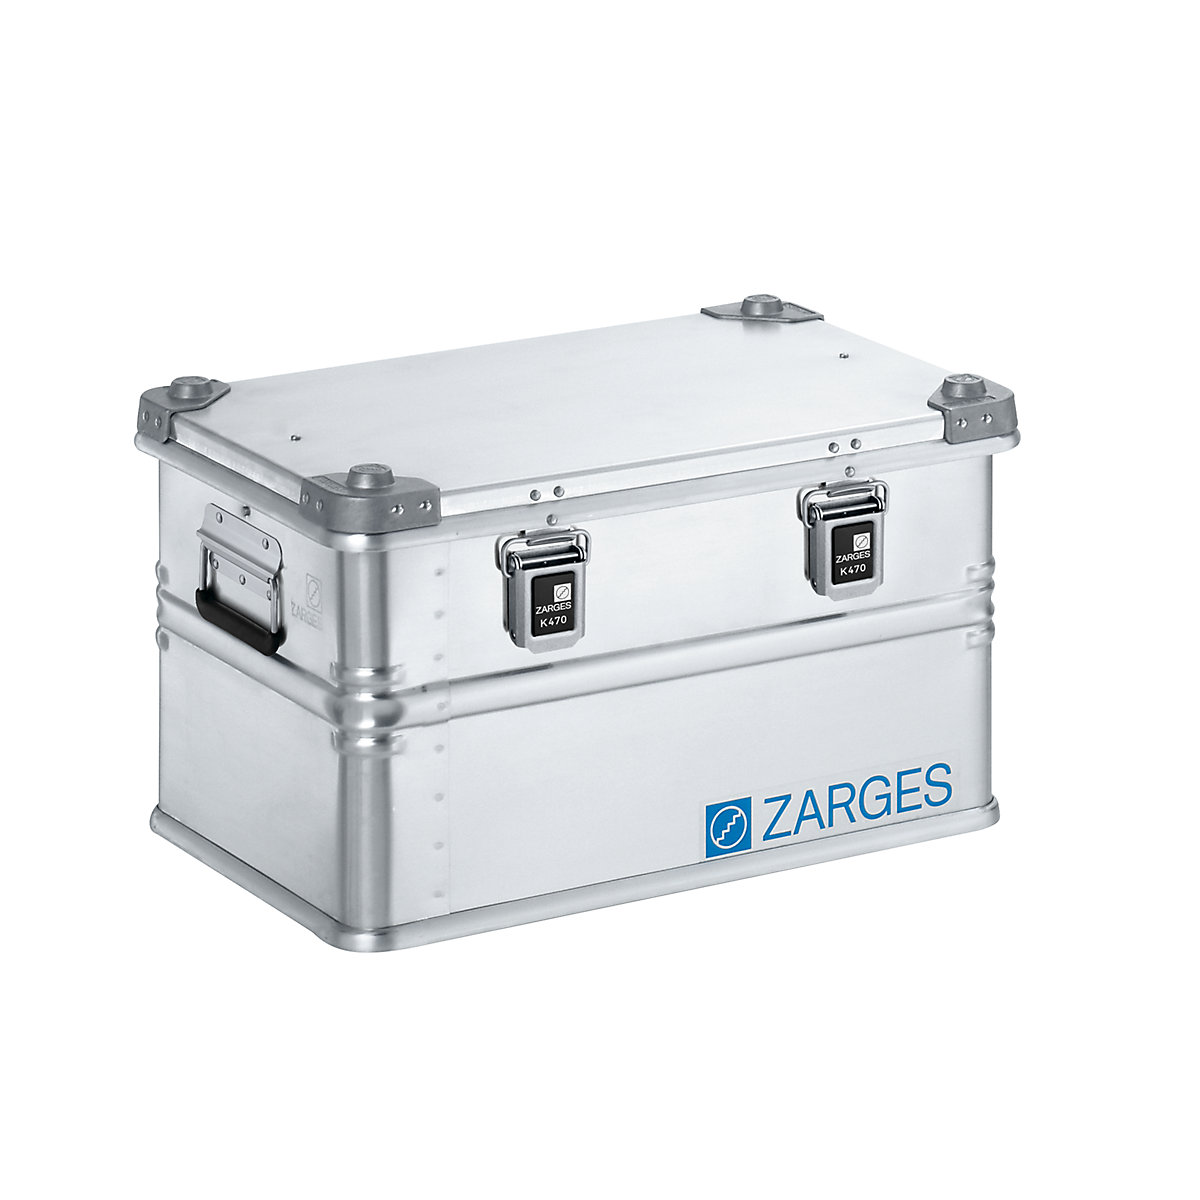 Caja de transporte de aluminio - ZARGES